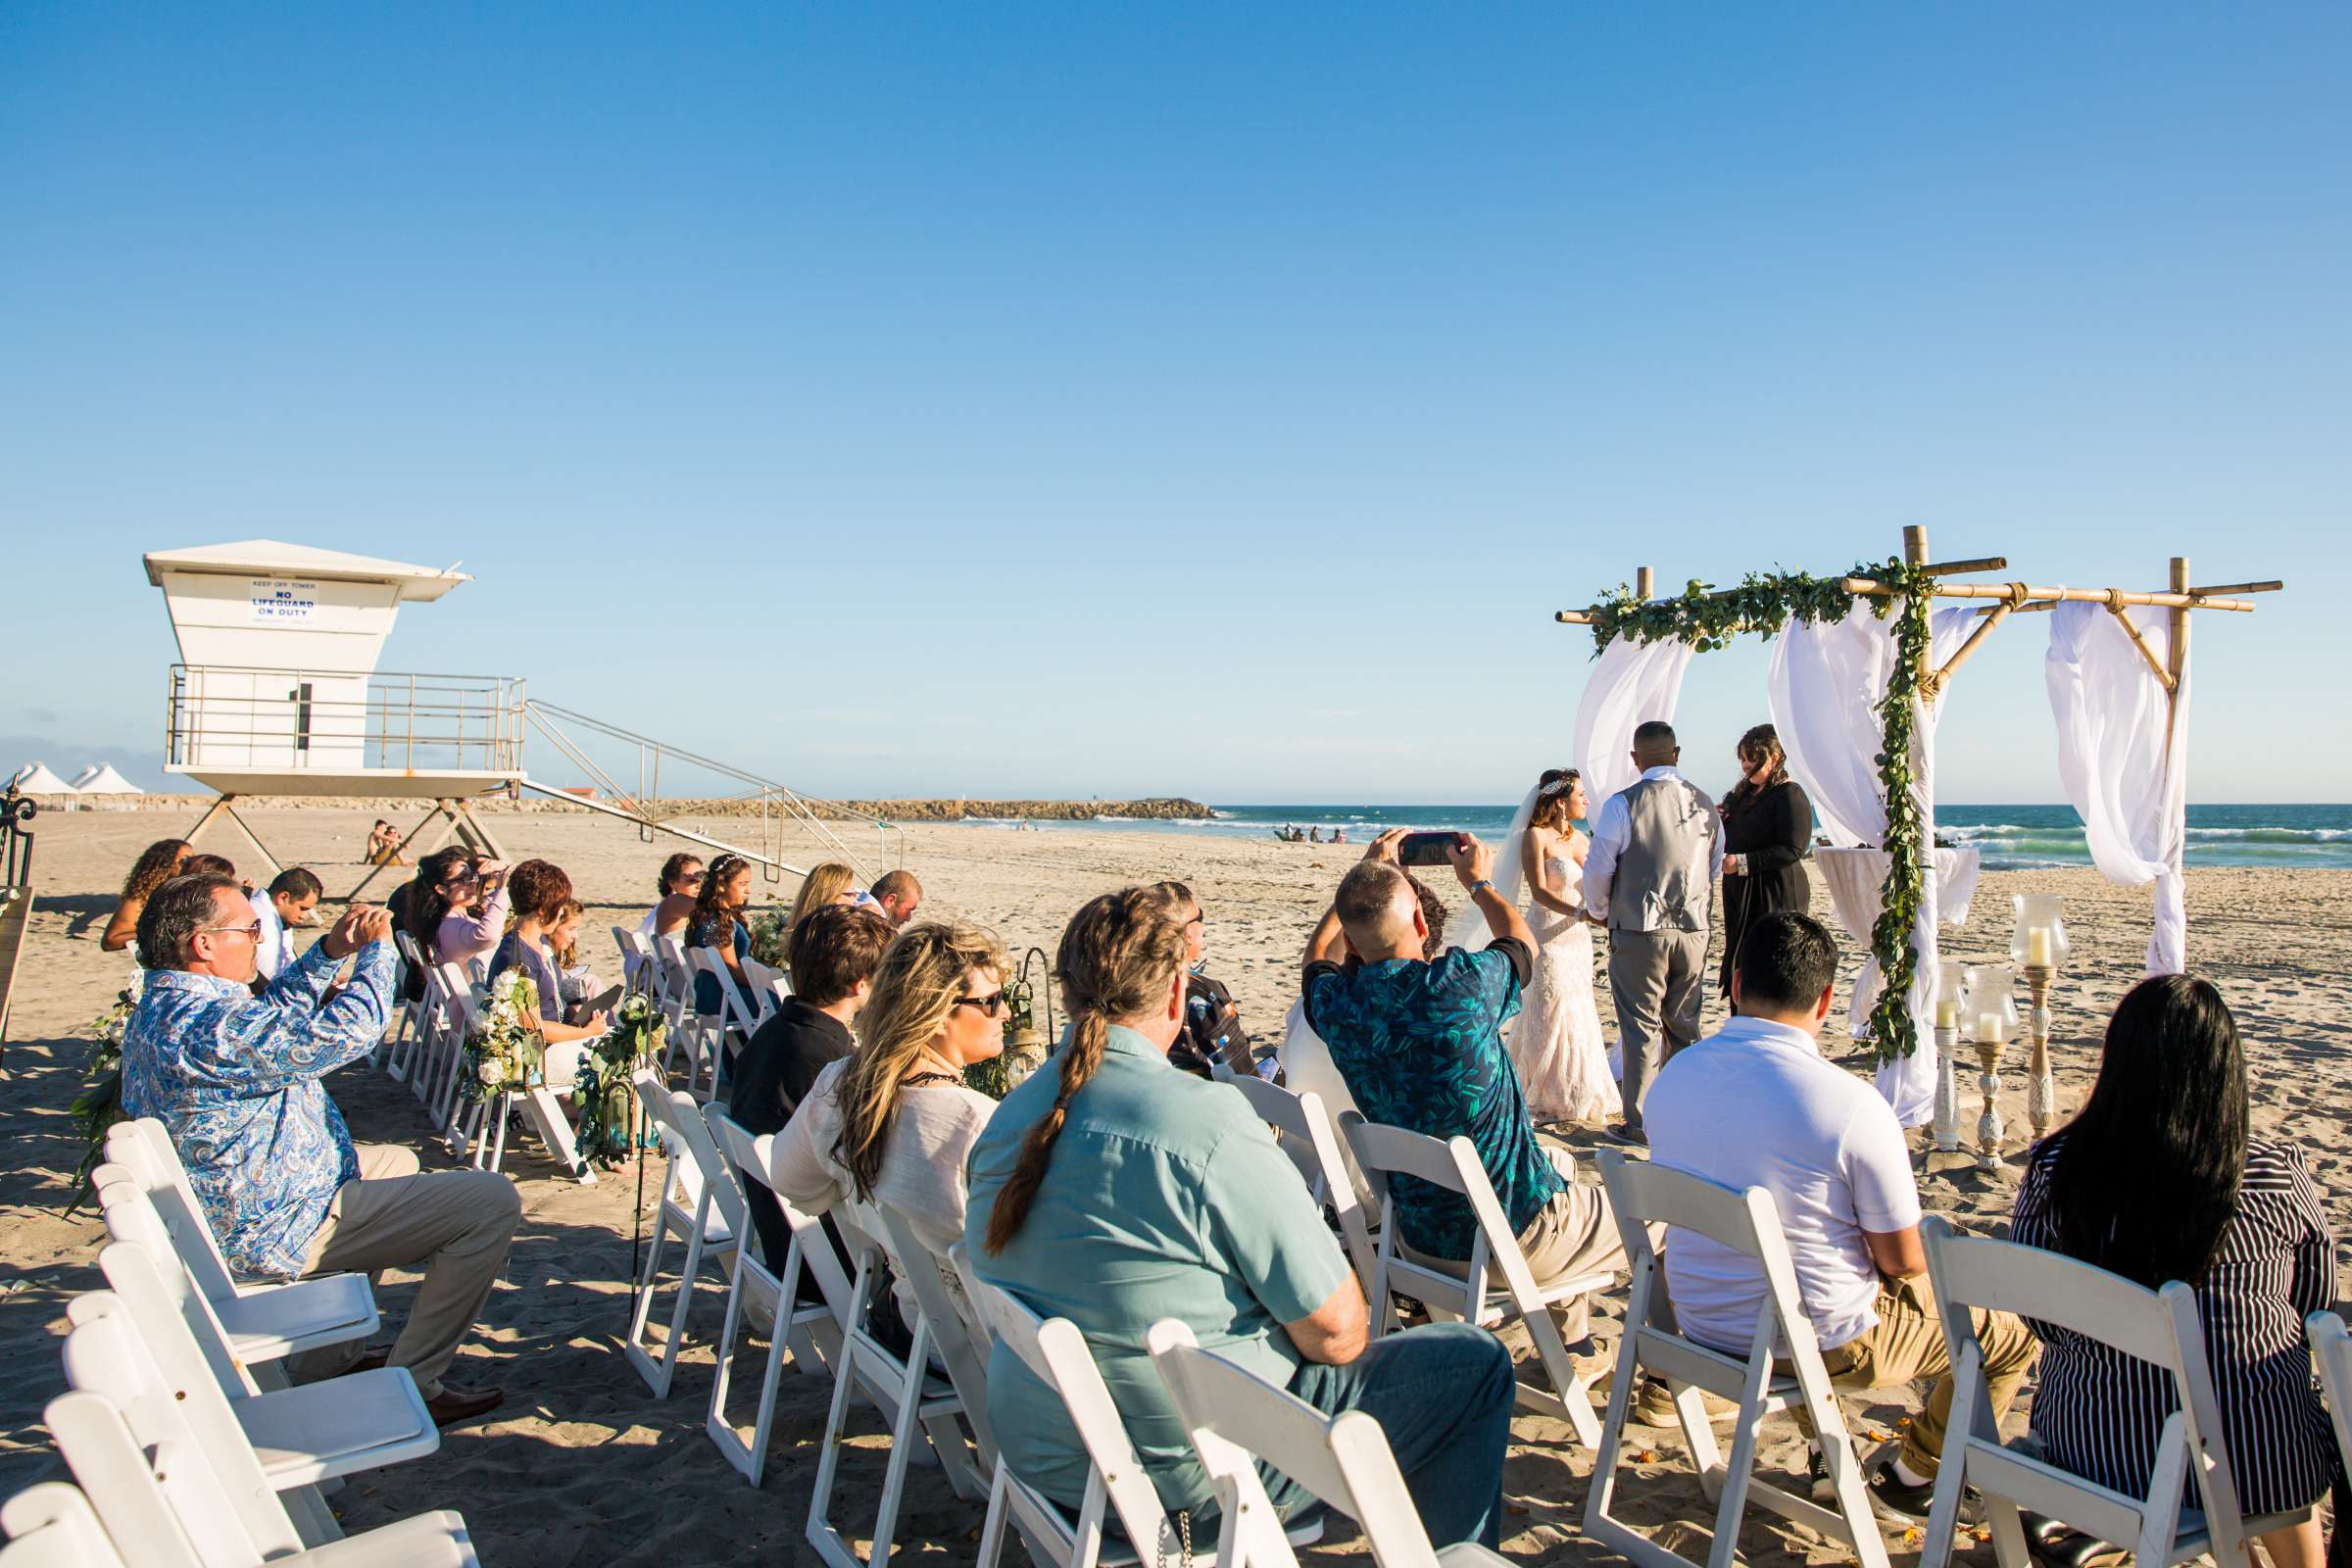 Del Mar Beach Resort Wedding coordinated by La Casa Del Mar, Alisa and Carlos Wedding Photo #380885 by True Photography